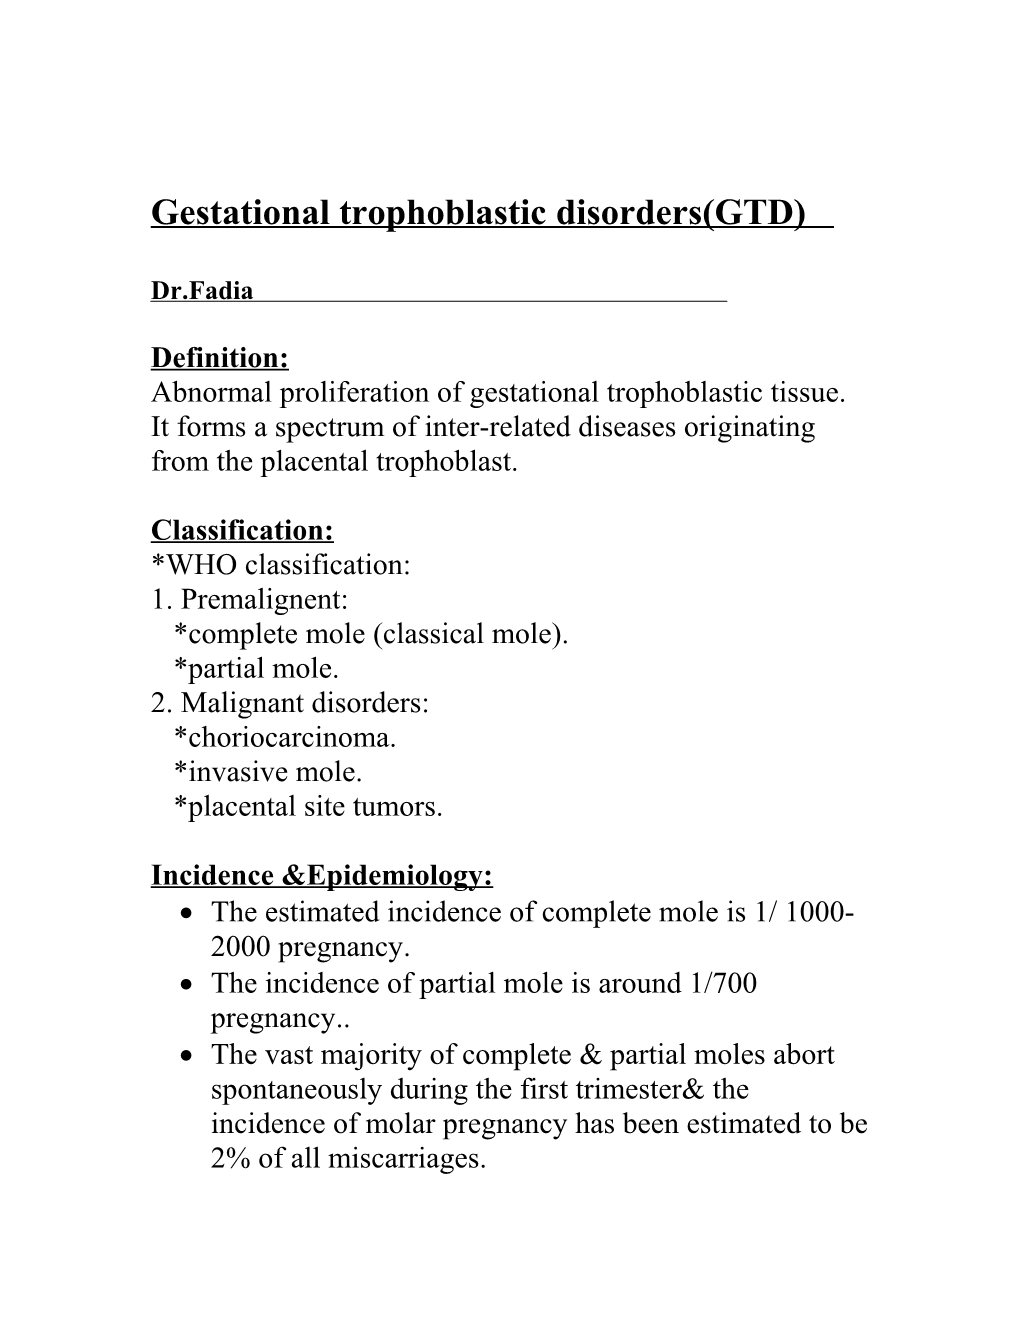 Gestational Trophoblastic Disorders(GTD)